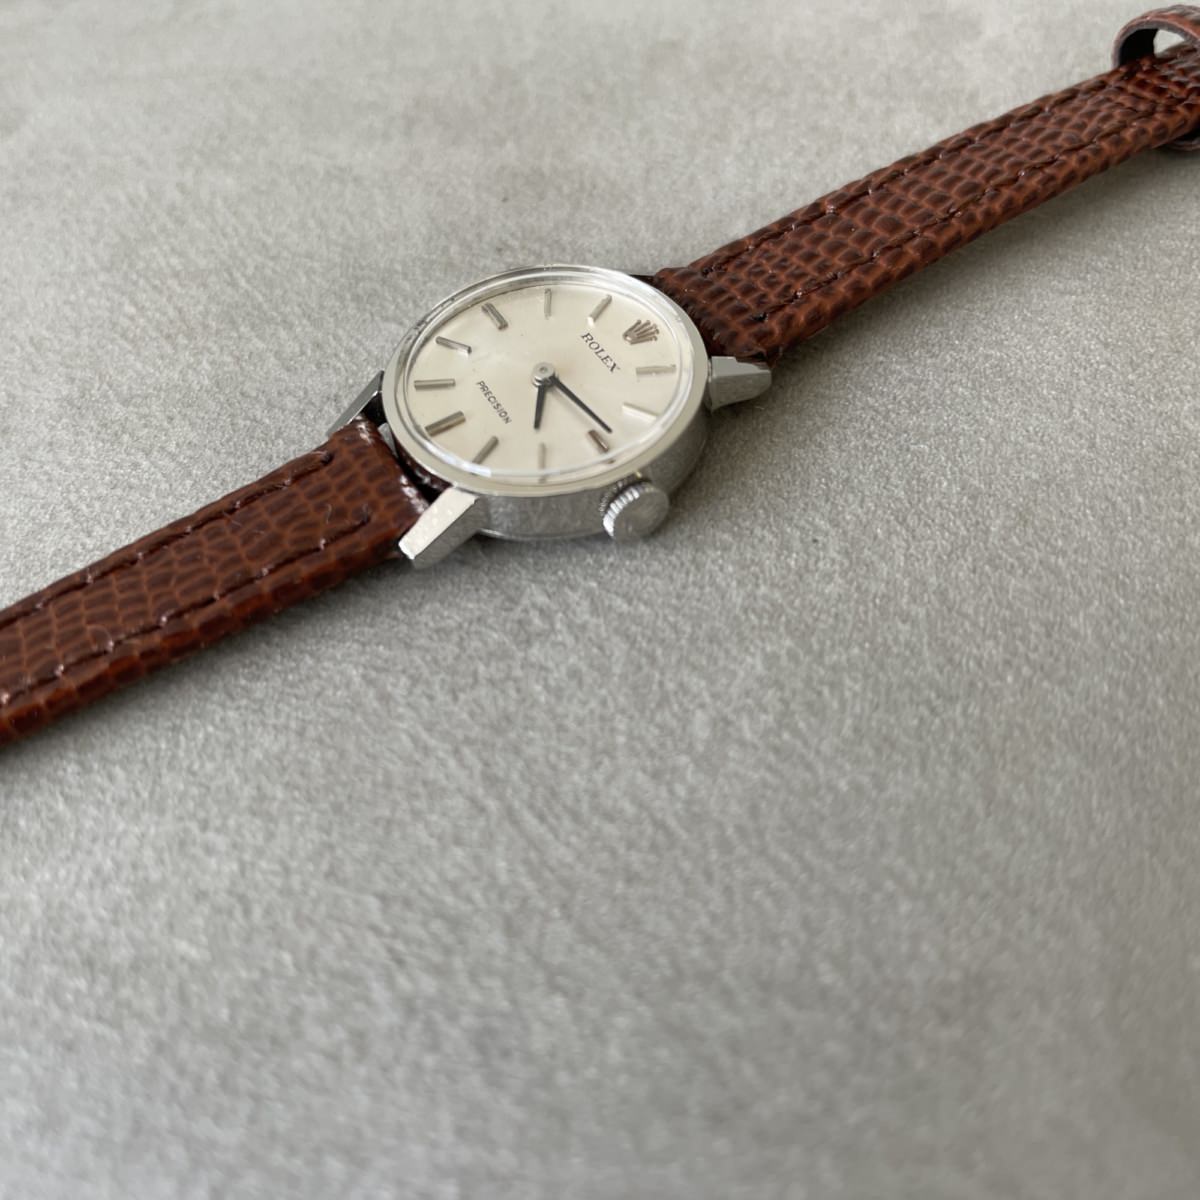 OthersROLEX 1960s  Vintage Watch / PRECISION